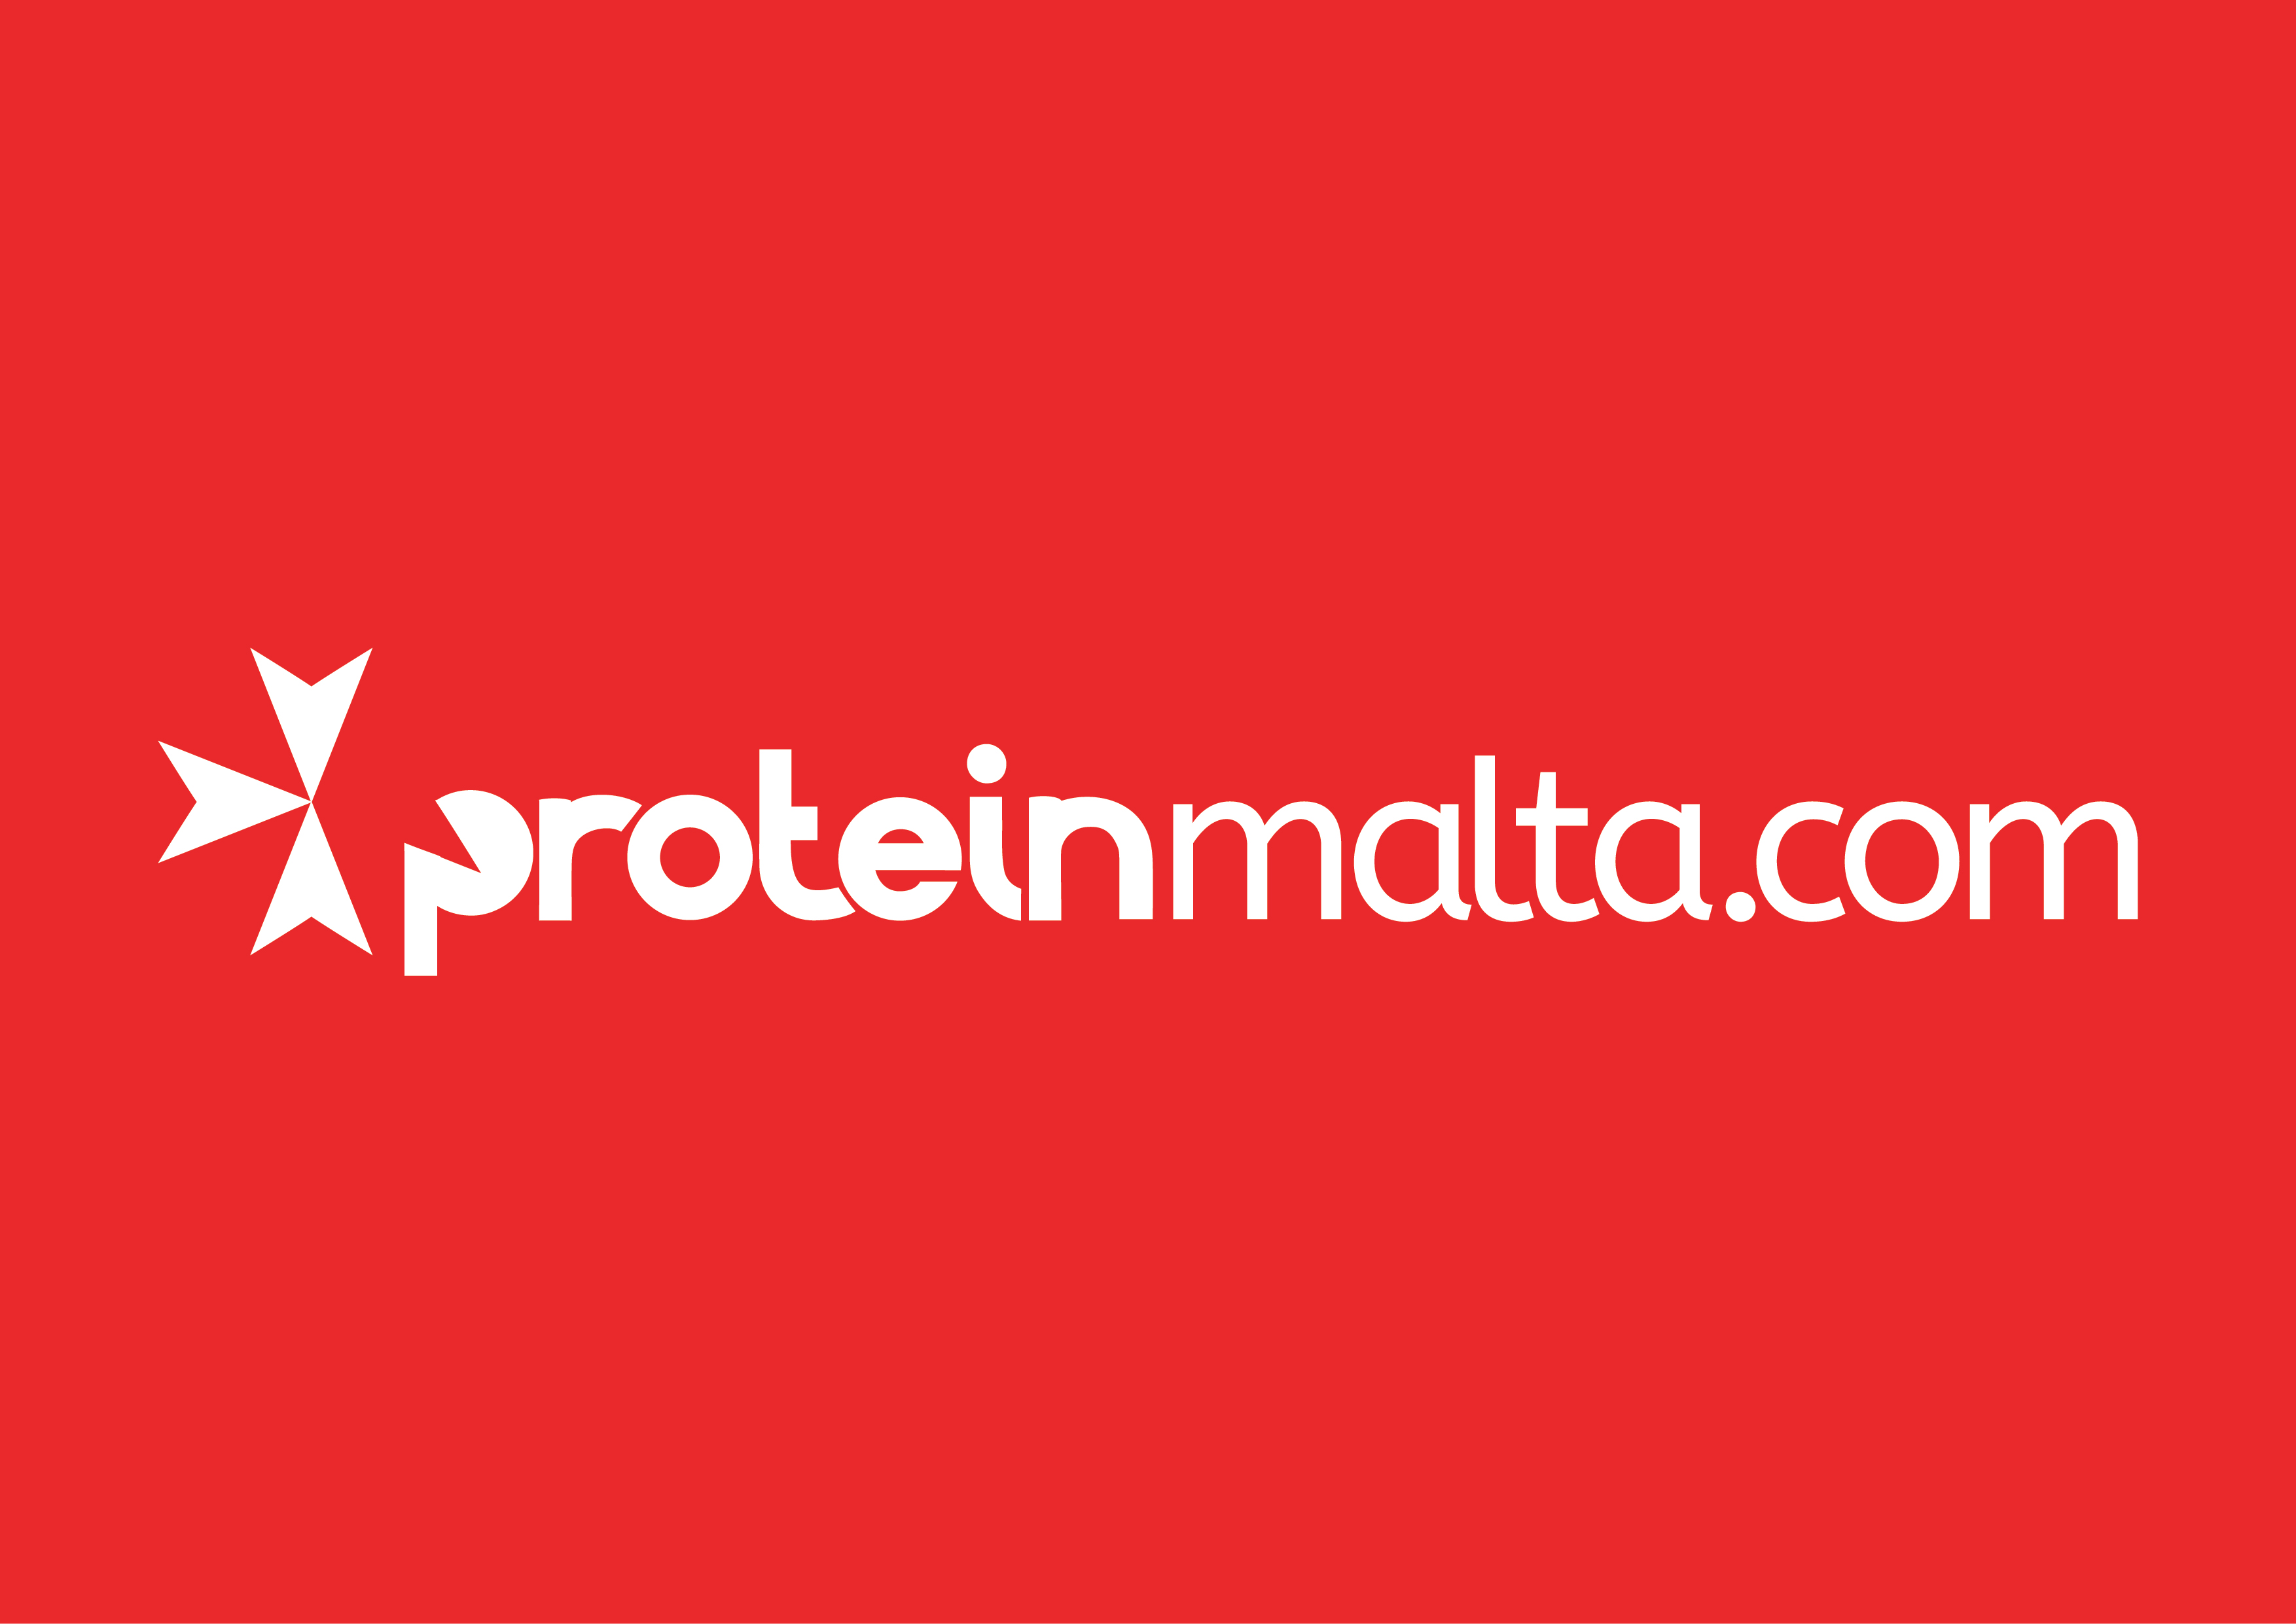 ProteinMalta.com